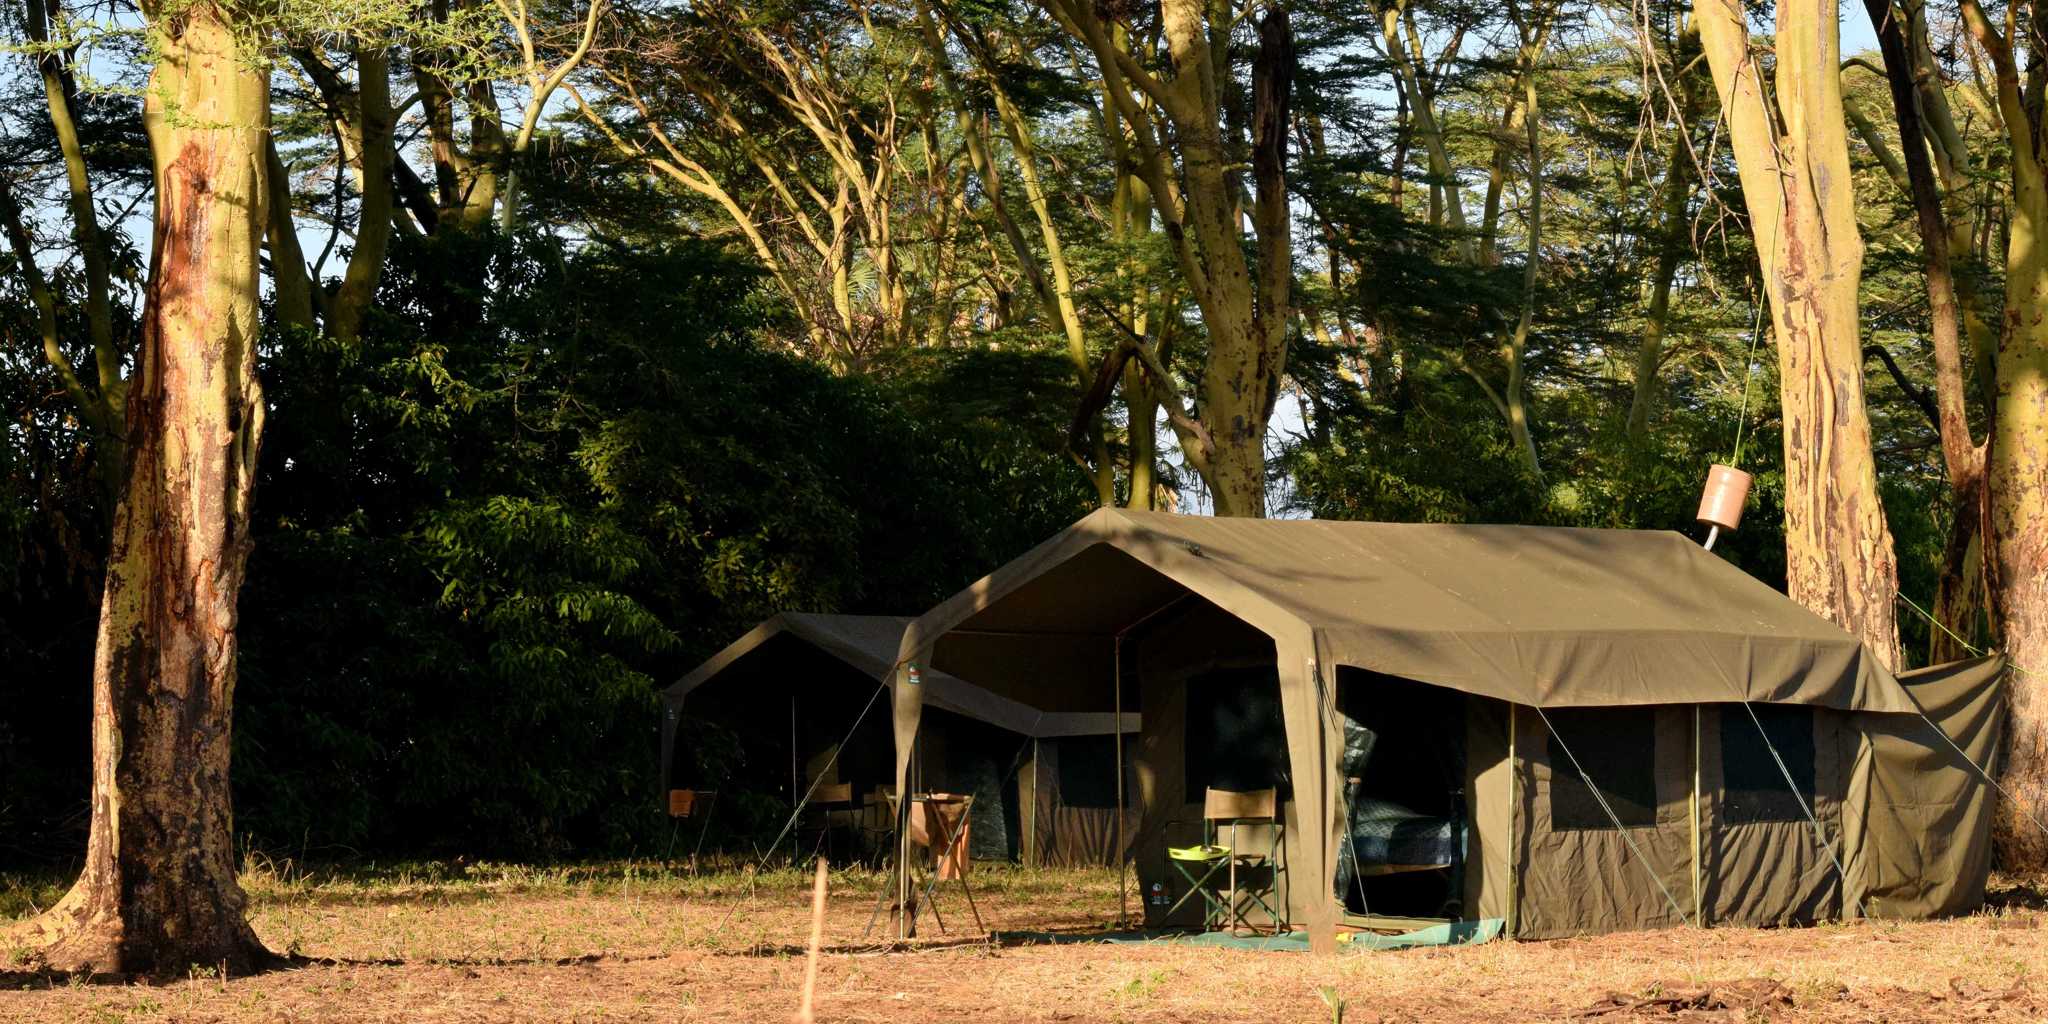 meru wilderness camp kenya tent yellow zebra safaris